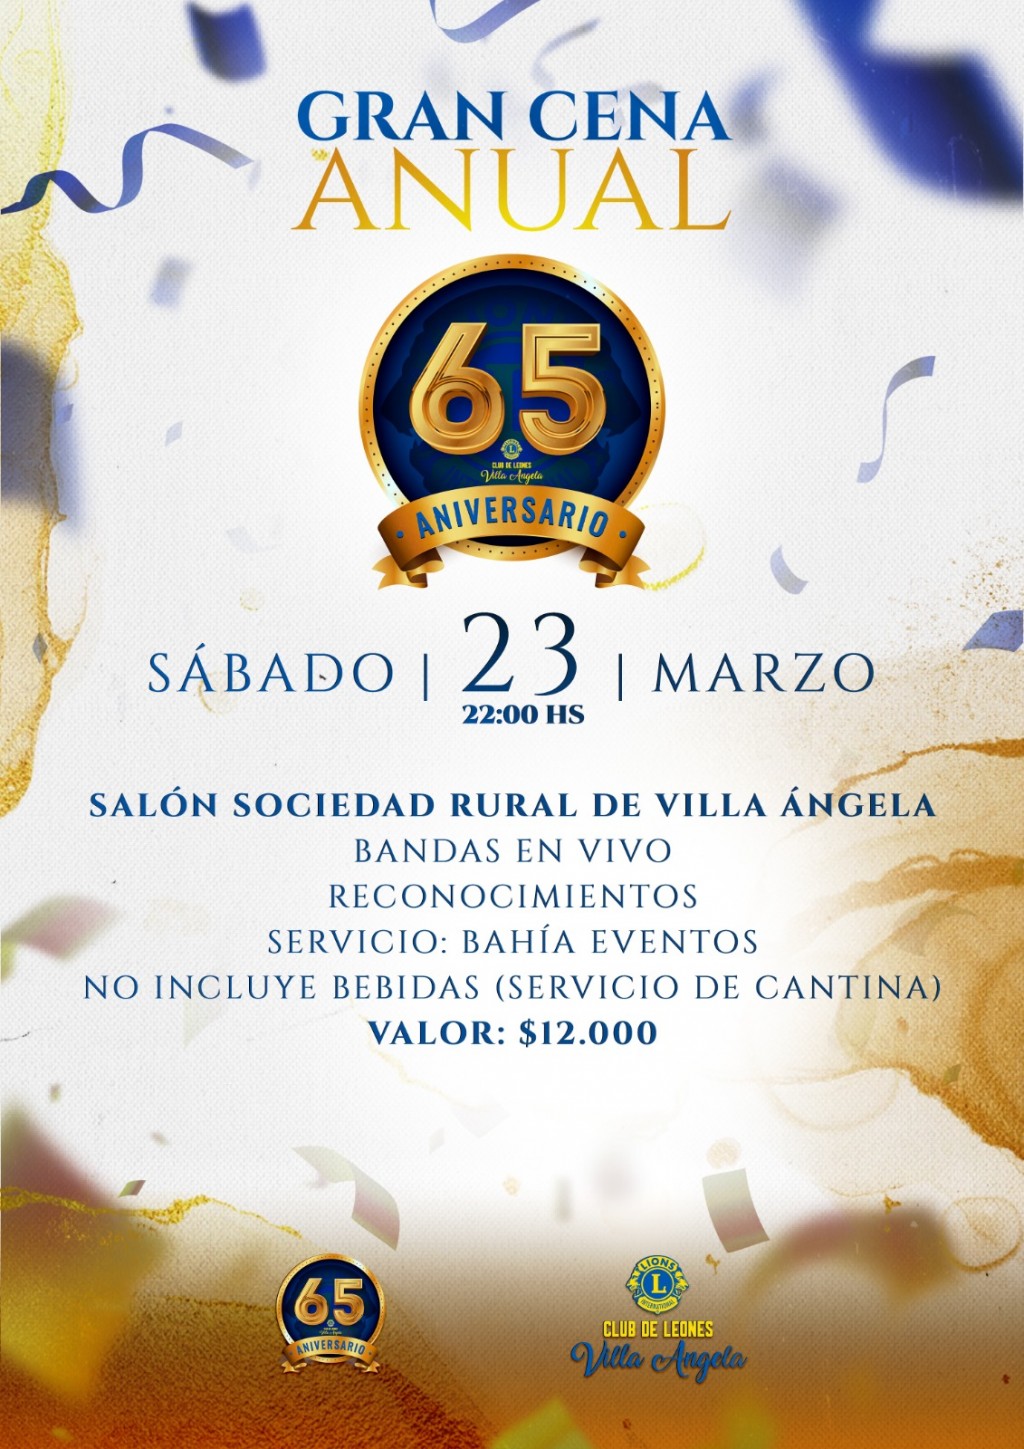 Villa Ángela: SÁBADO 23 DE MARZO | Gran Cena Anual del 65º Aniversario del Club de Leones 